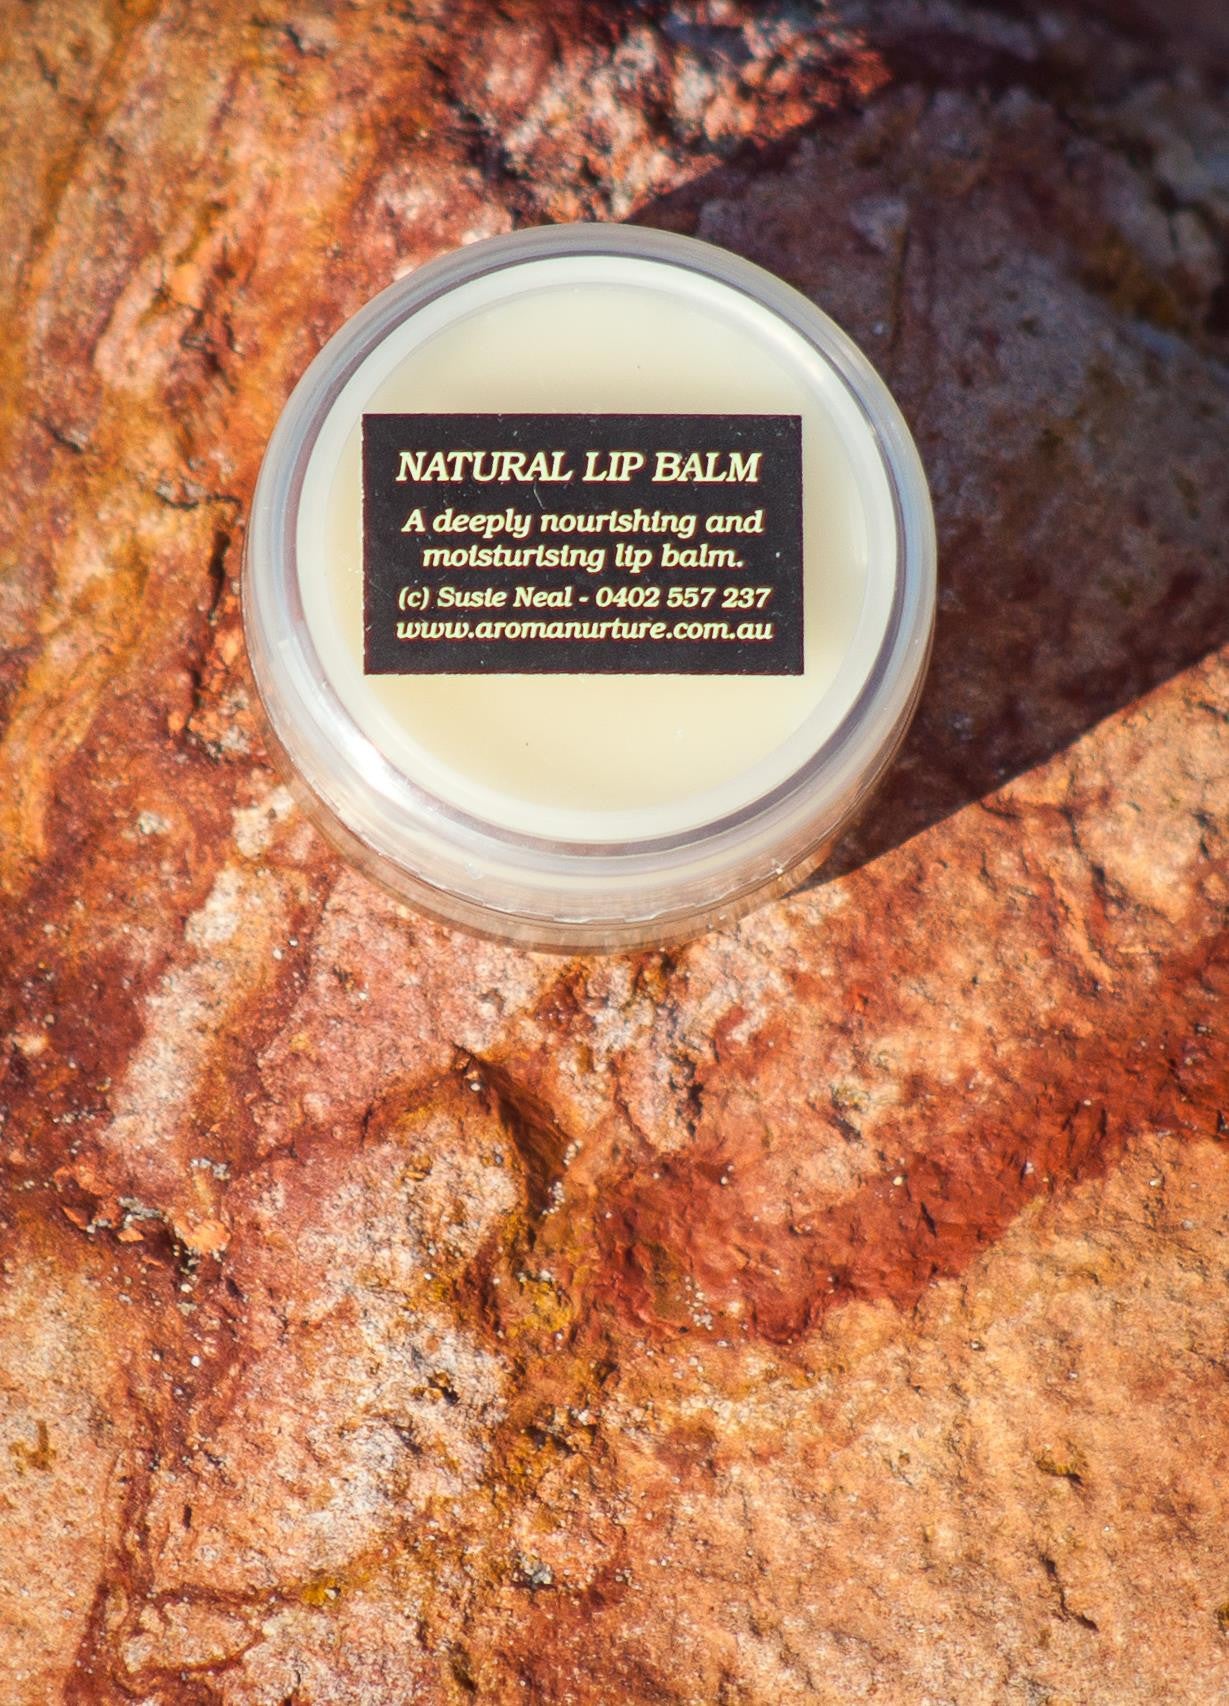 All natural Lip Balm. 10gm.